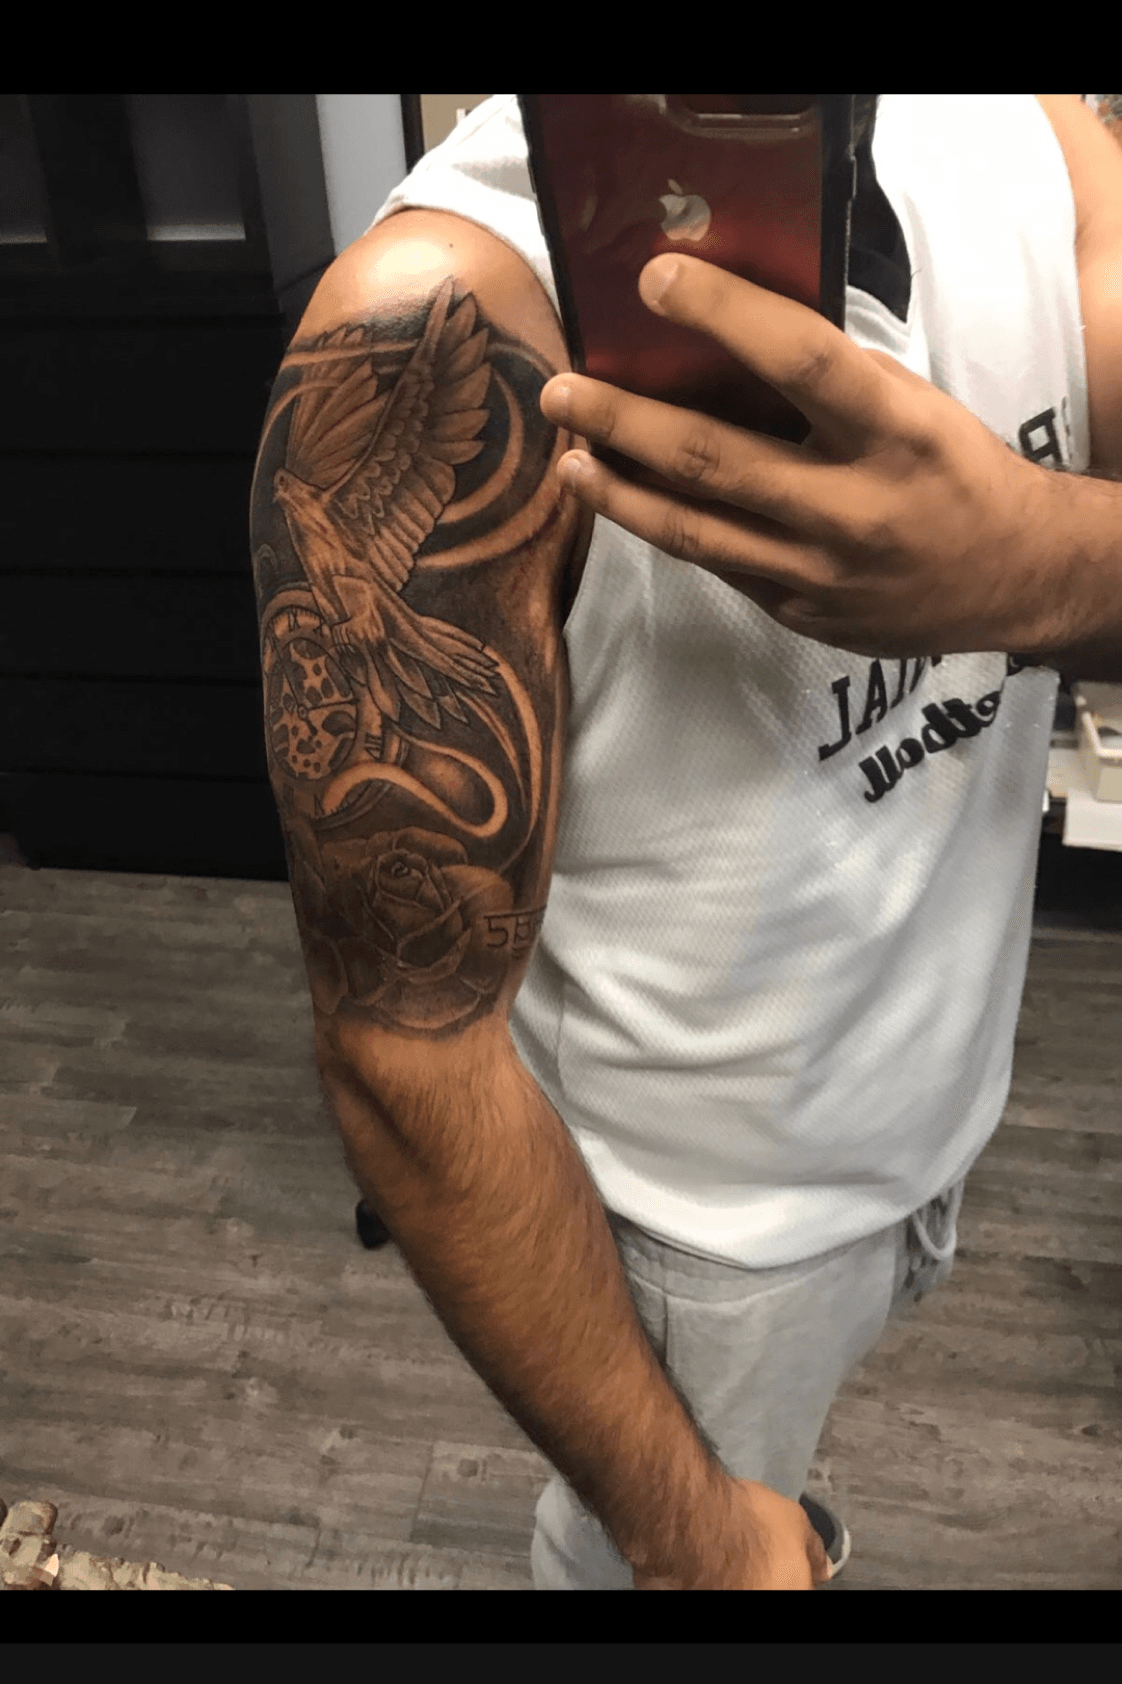 switch tattoo by artemis on DeviantArt